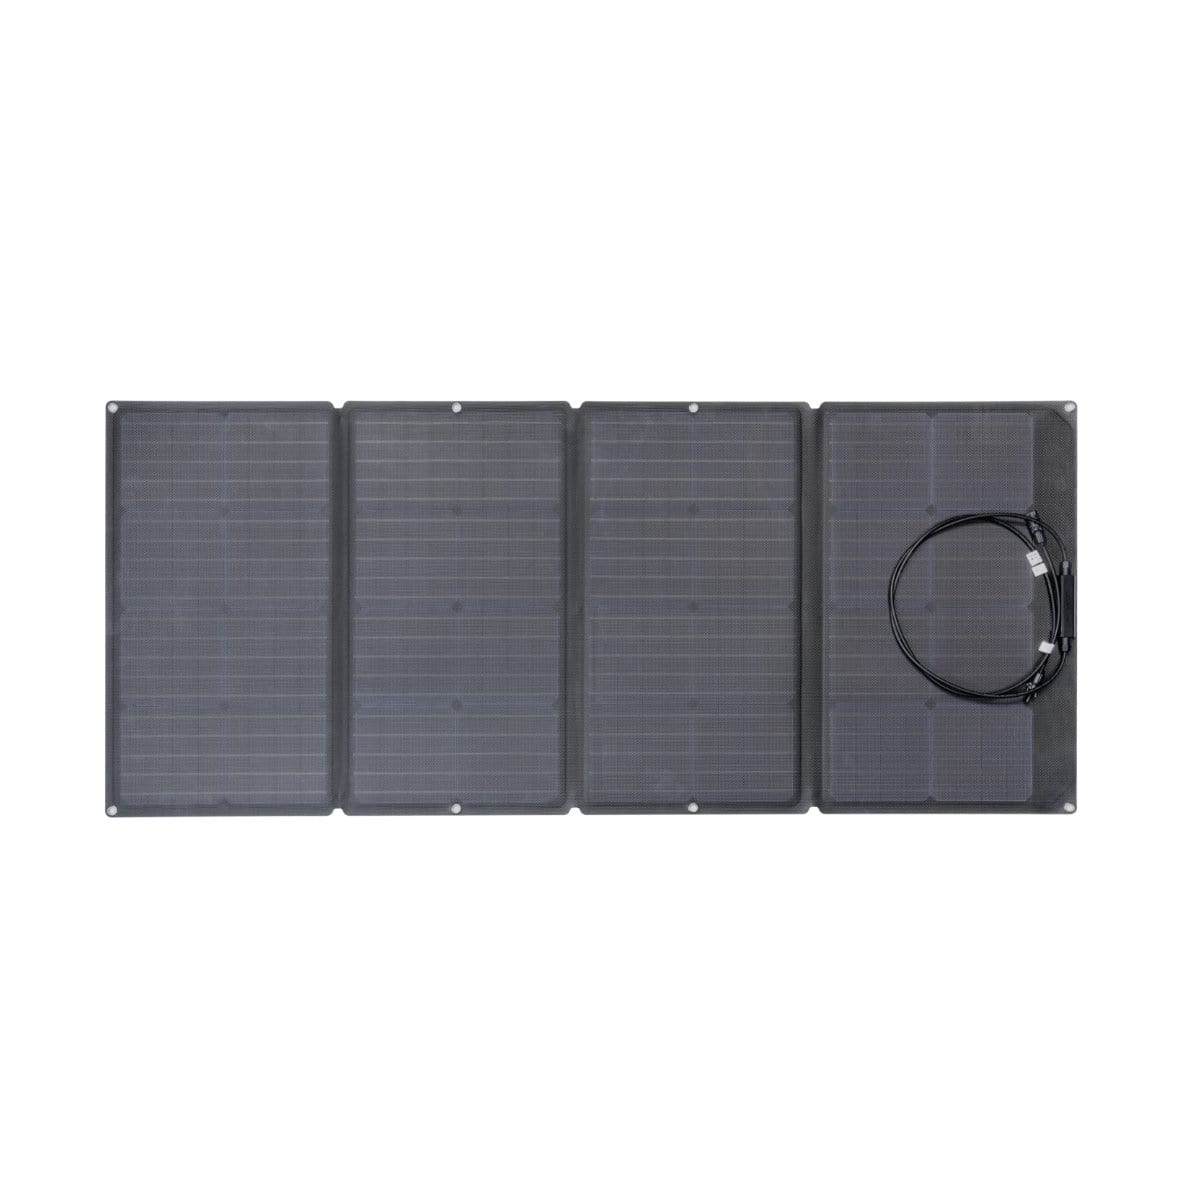 EcoFlow Delta 1300 + 2x 110W Solar Panel Solar Generator Kit